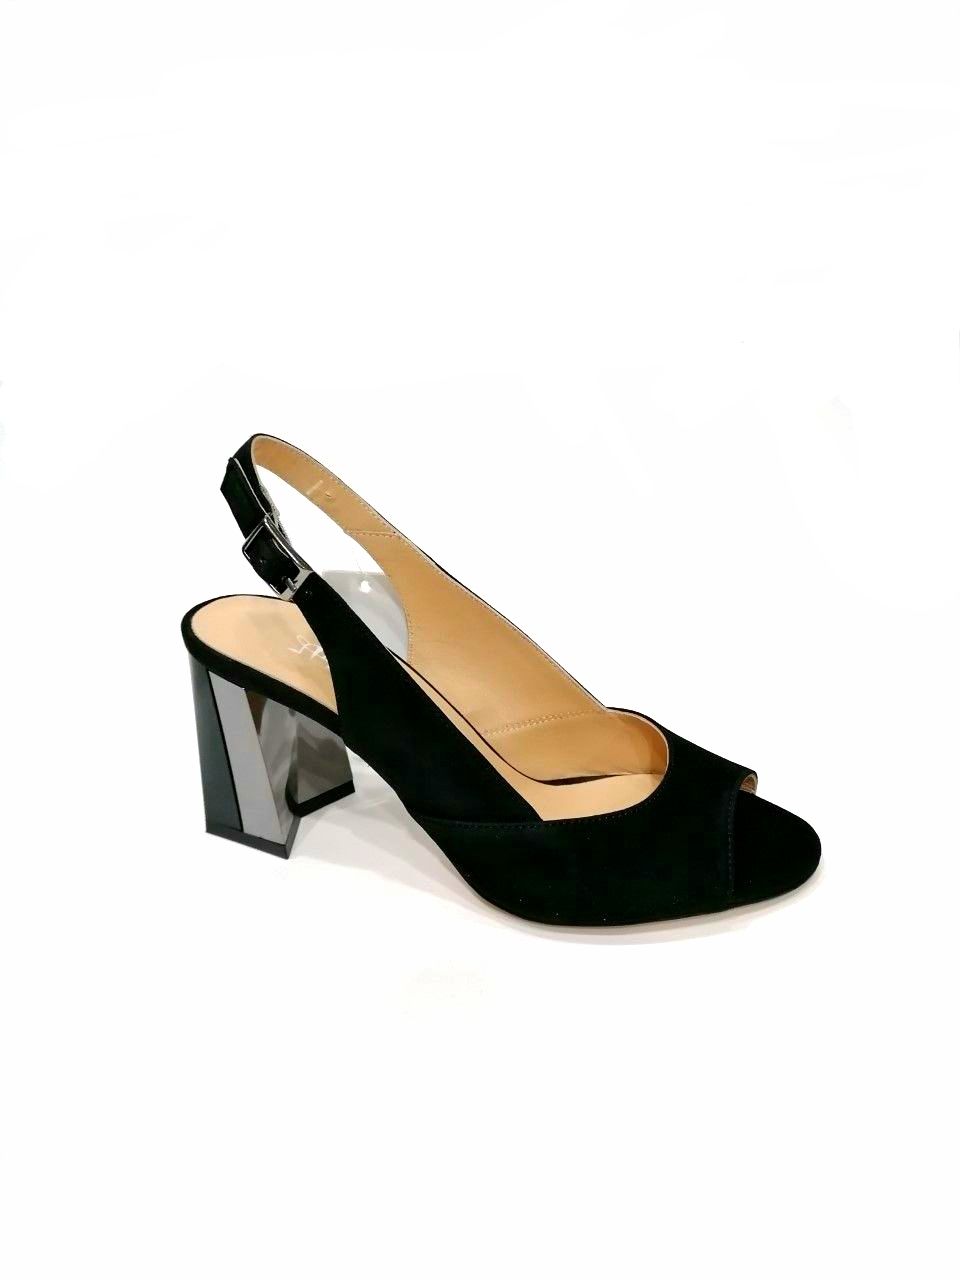 black suede sandals with bicolor heel